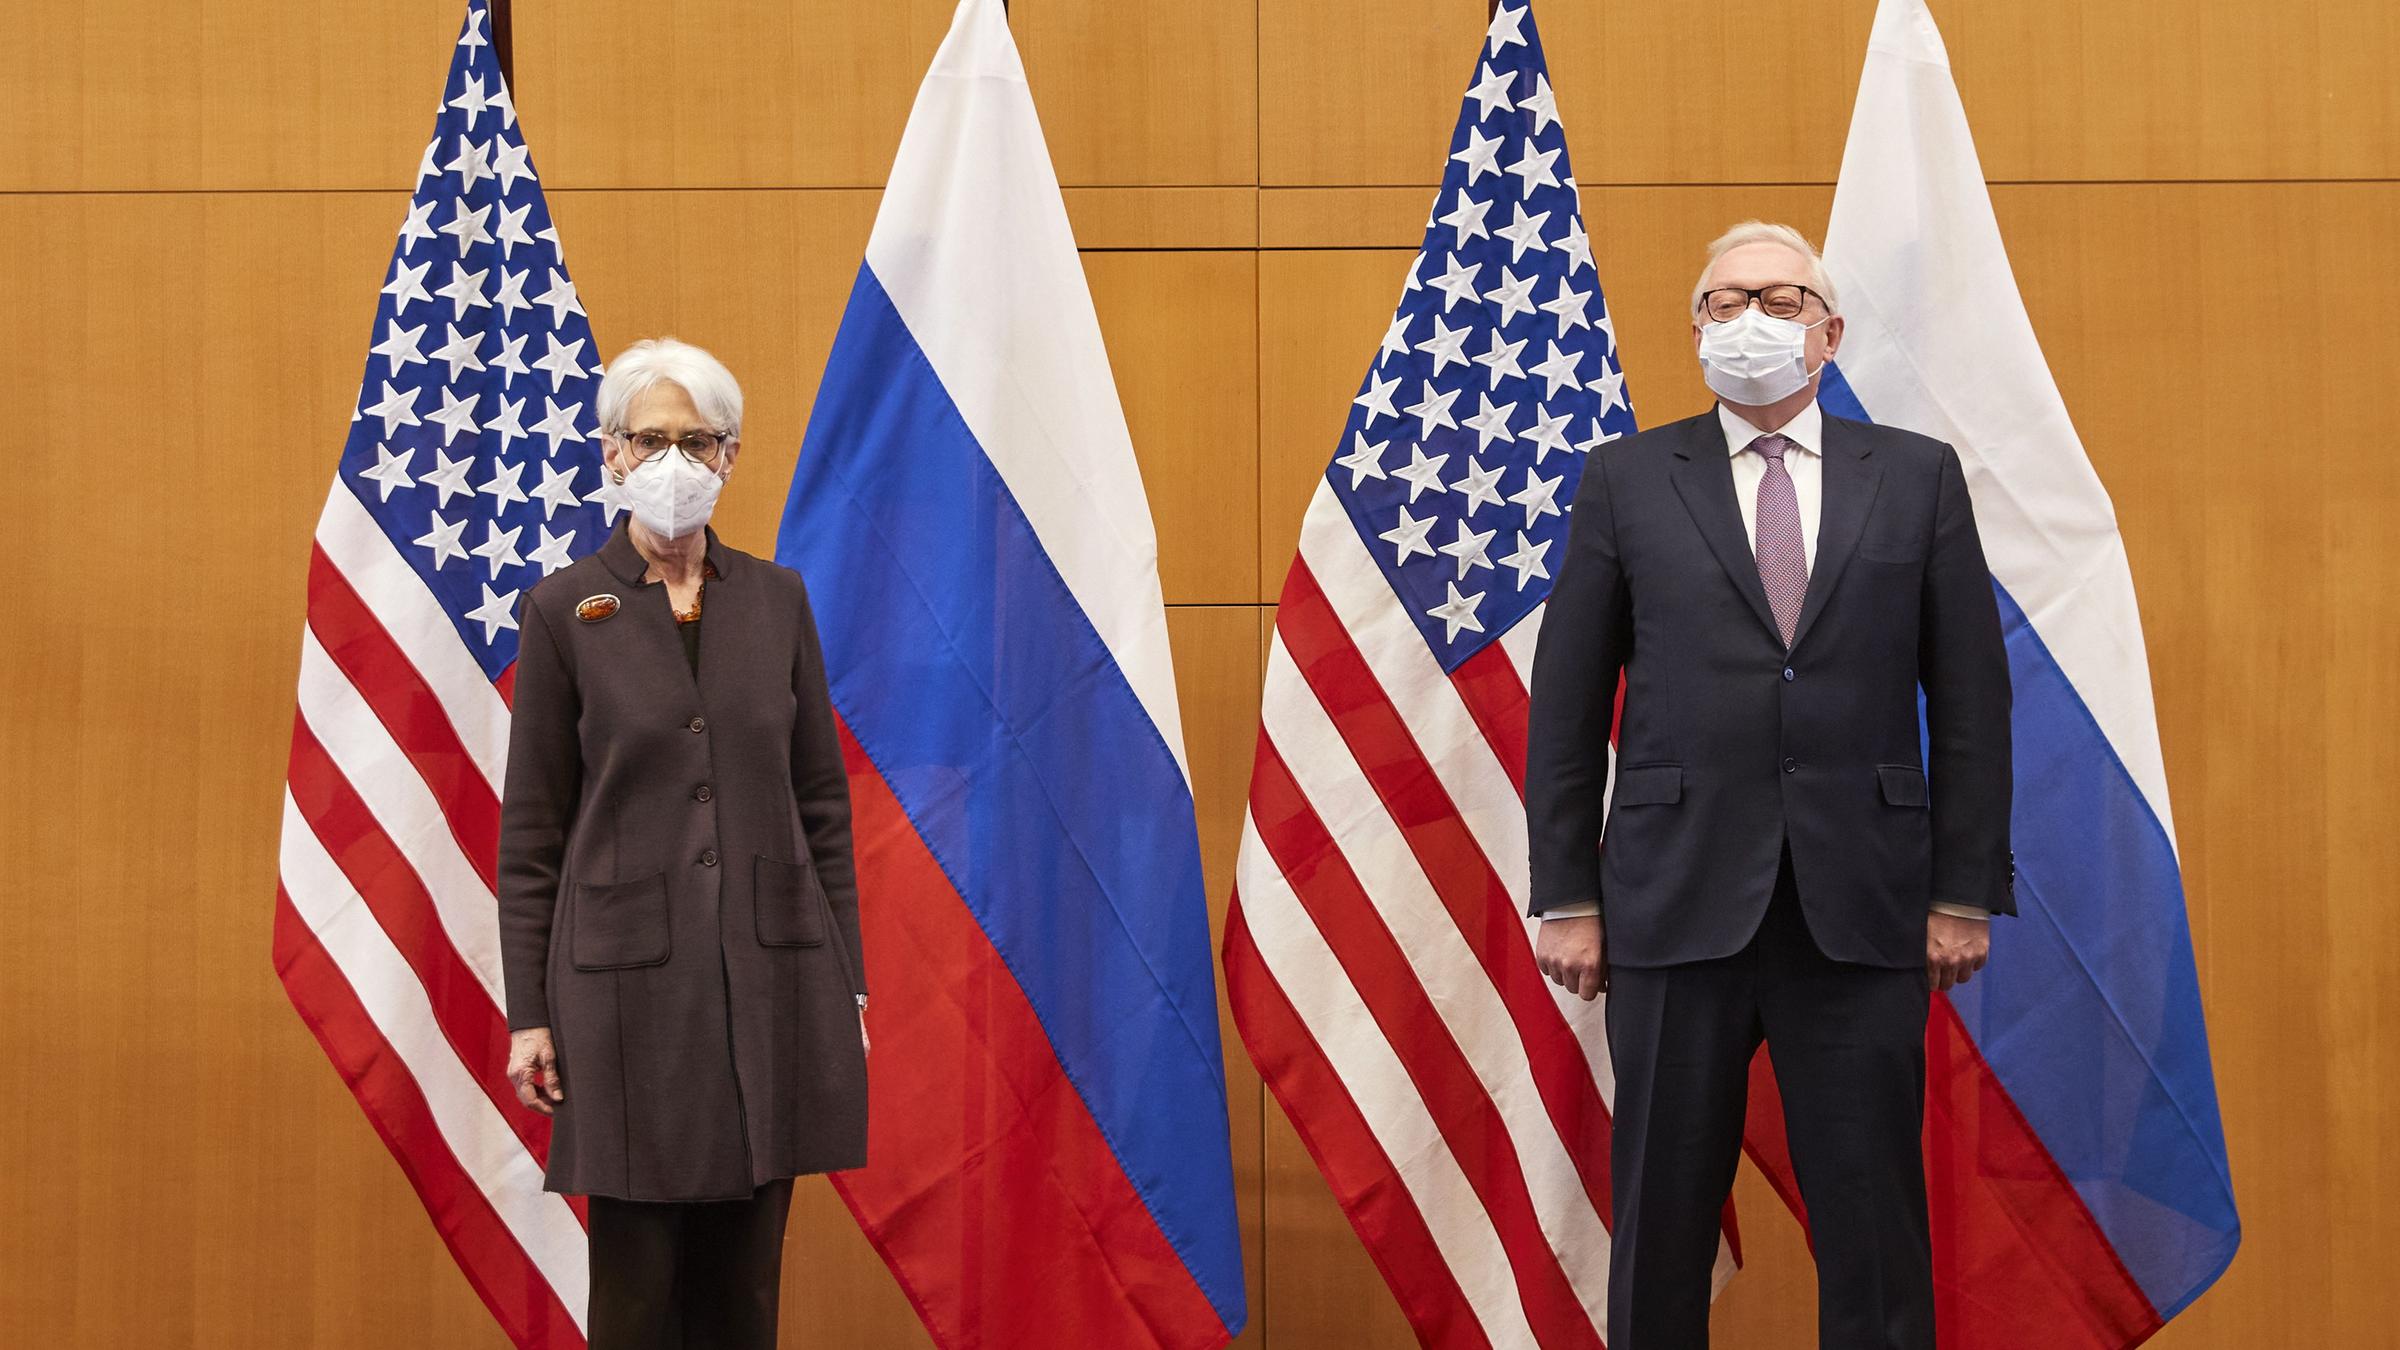 Schweiz, Genf: Wendy Sherman, Vizeaußenministerin der USA, und Sergej Rjabkow, Vizeaußenminister von Russland, stehen bei einem bilateralen Treffen zwischen Russland und den USA nebeneinander.